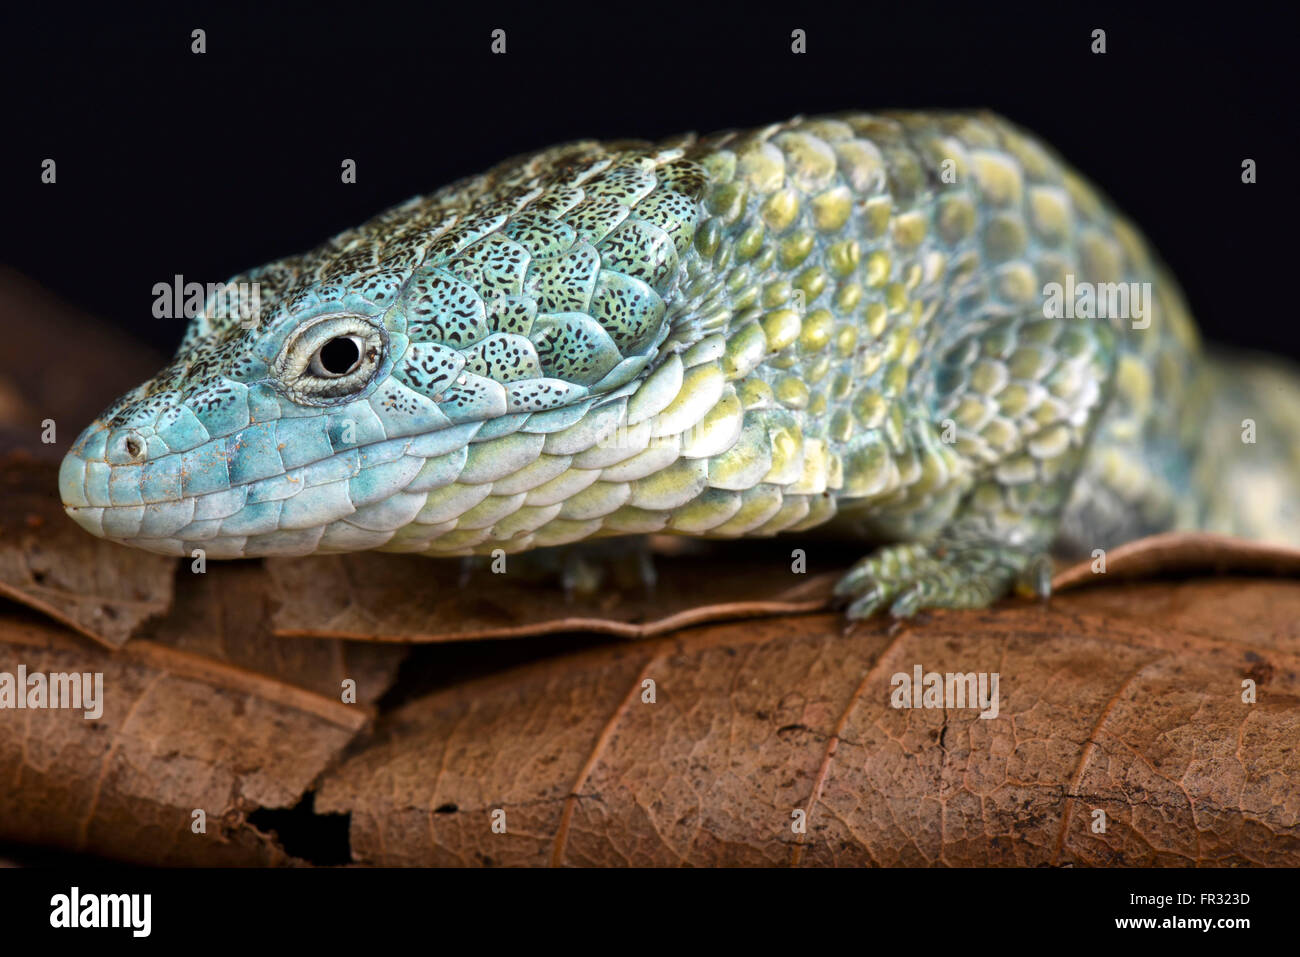 Arboree Mixtecan alligator lizard (Abronia mixteca) Foto Stock